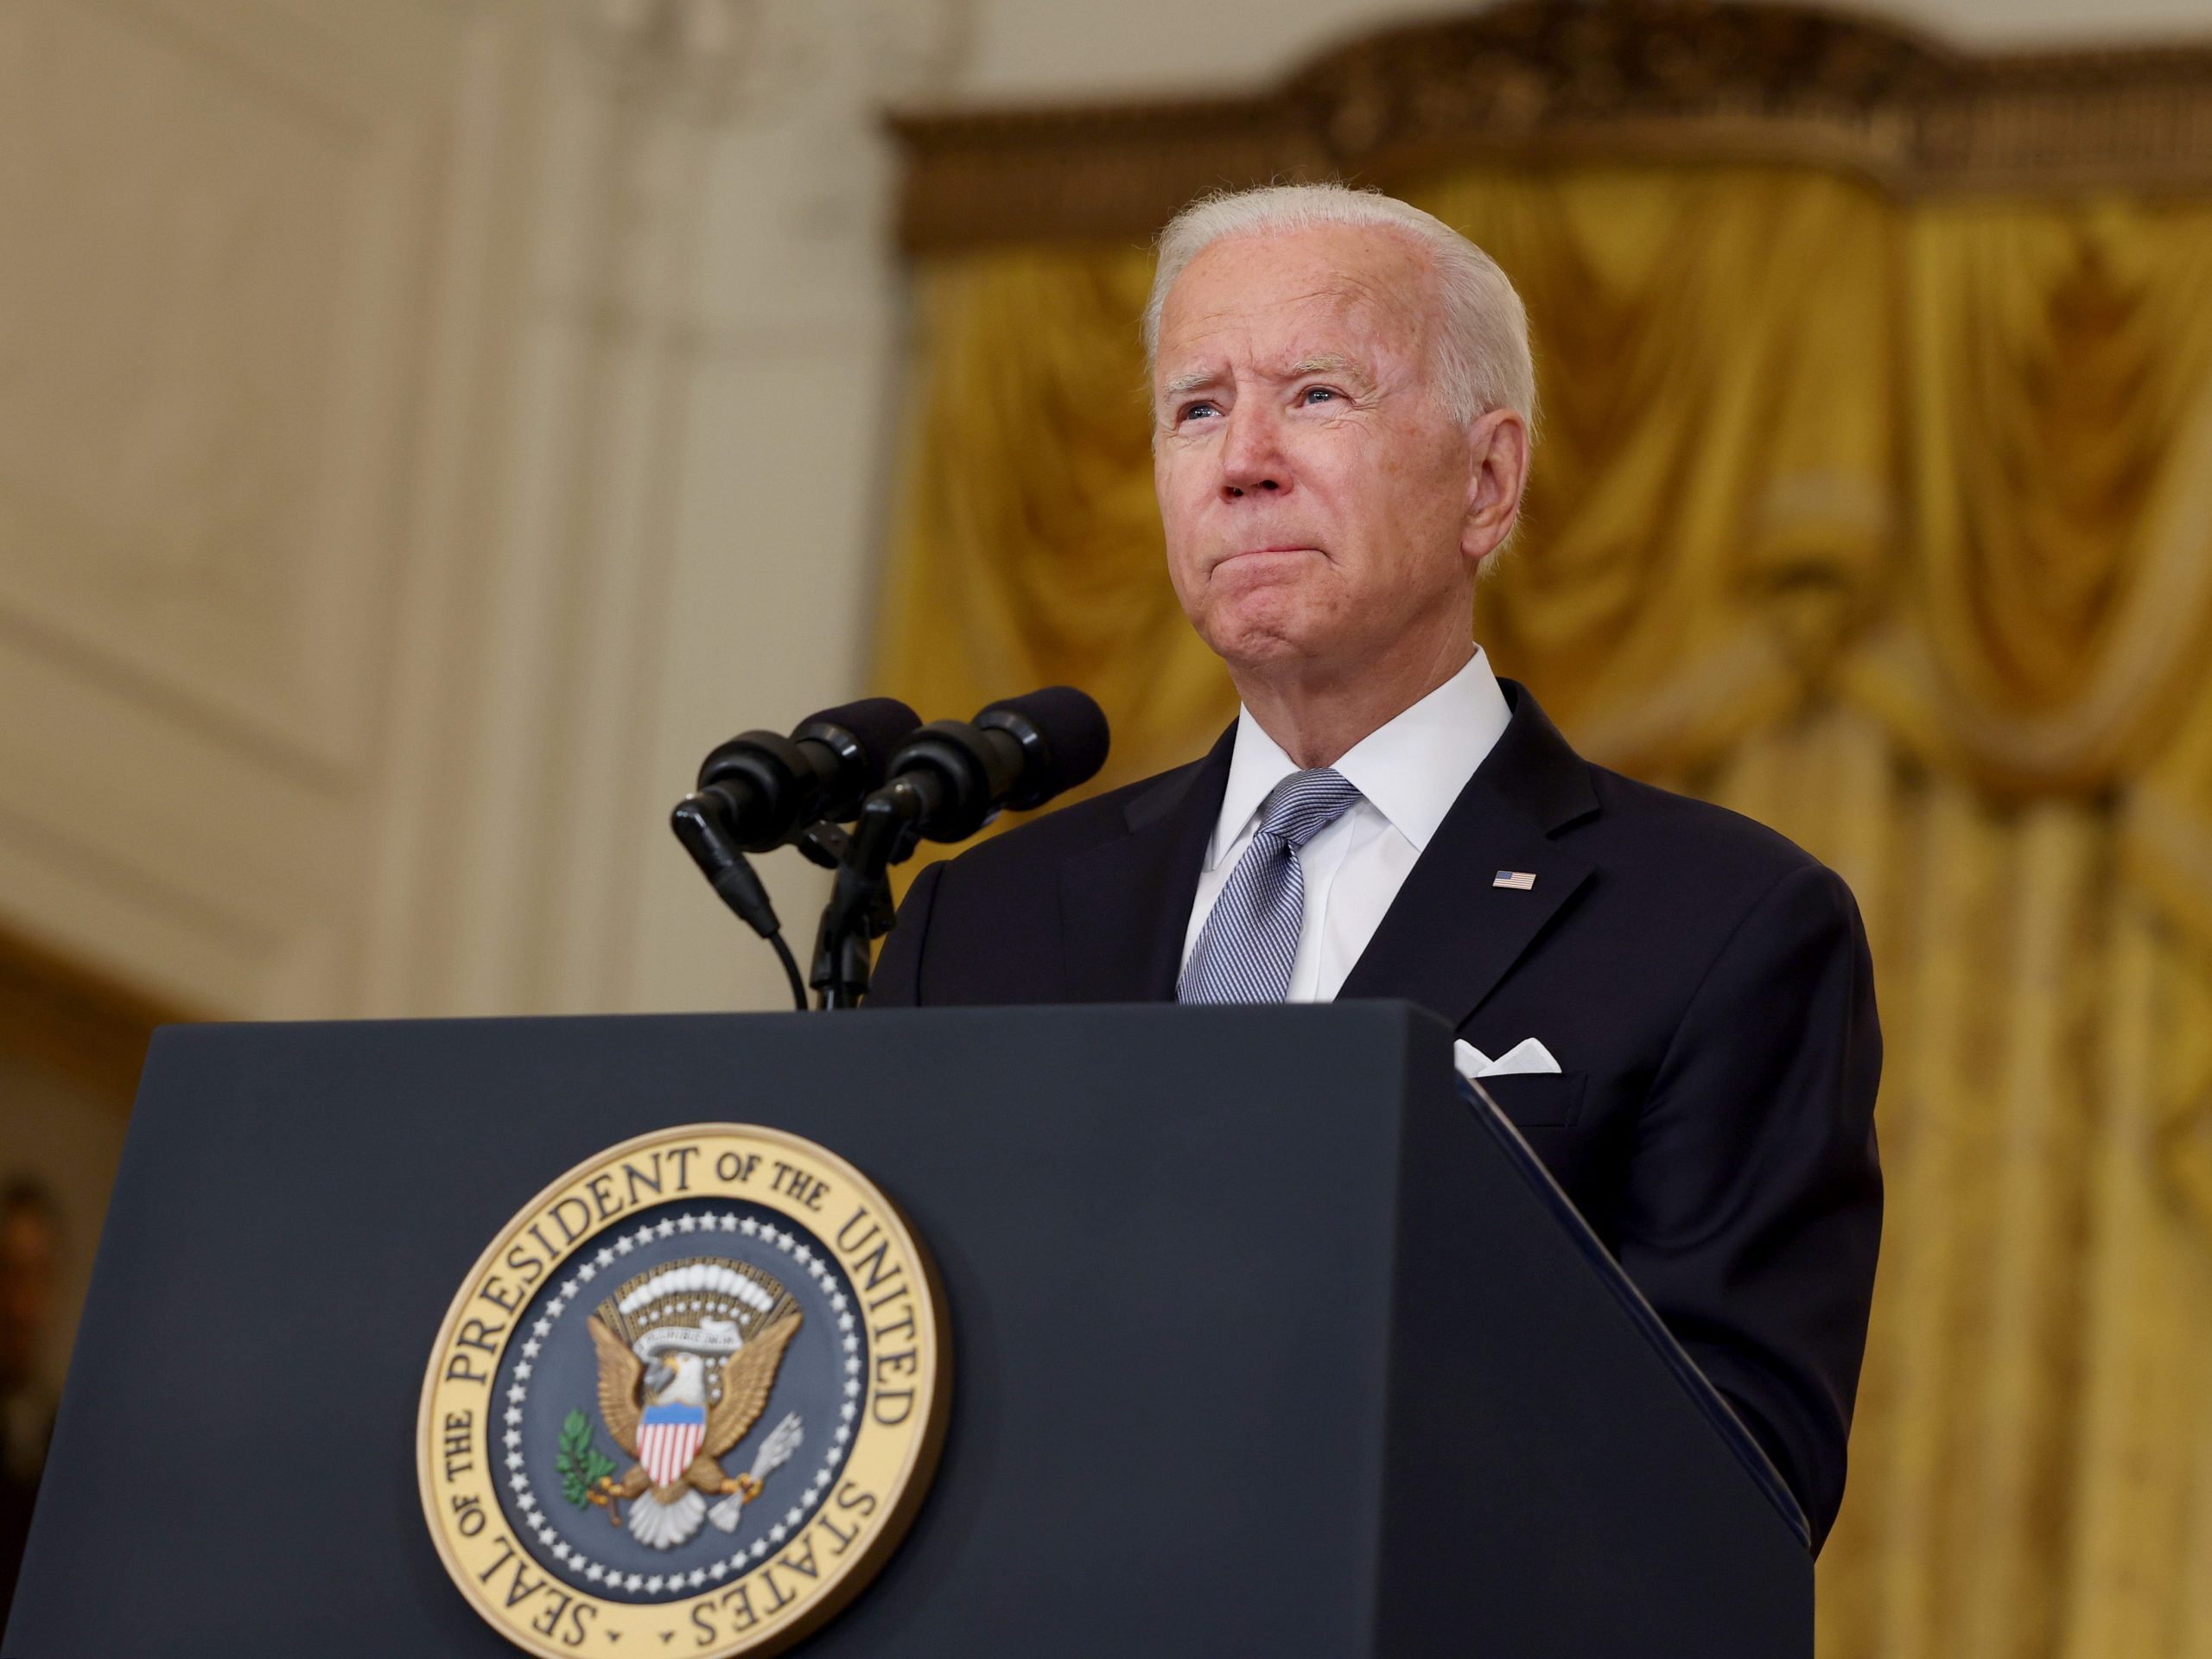 President Joe Biden speaks at the White House on August 16, 2021.